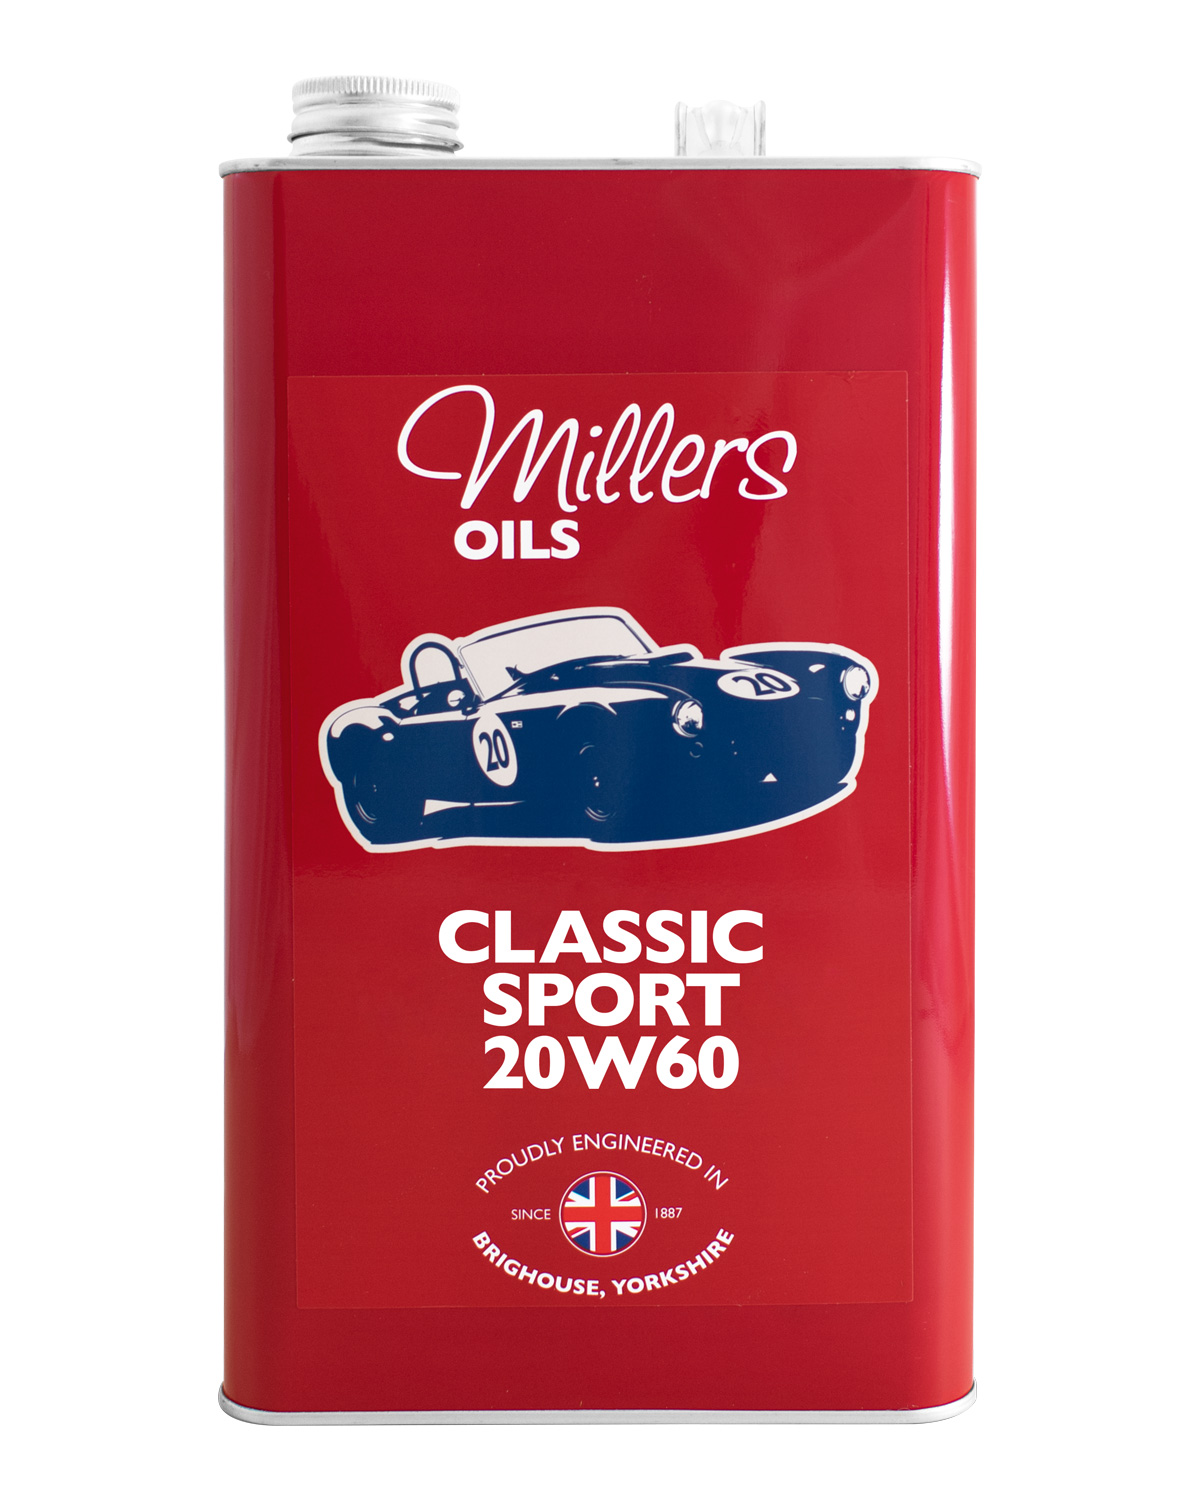 Millers OIls Classic Sport 20W60, 5 Liter